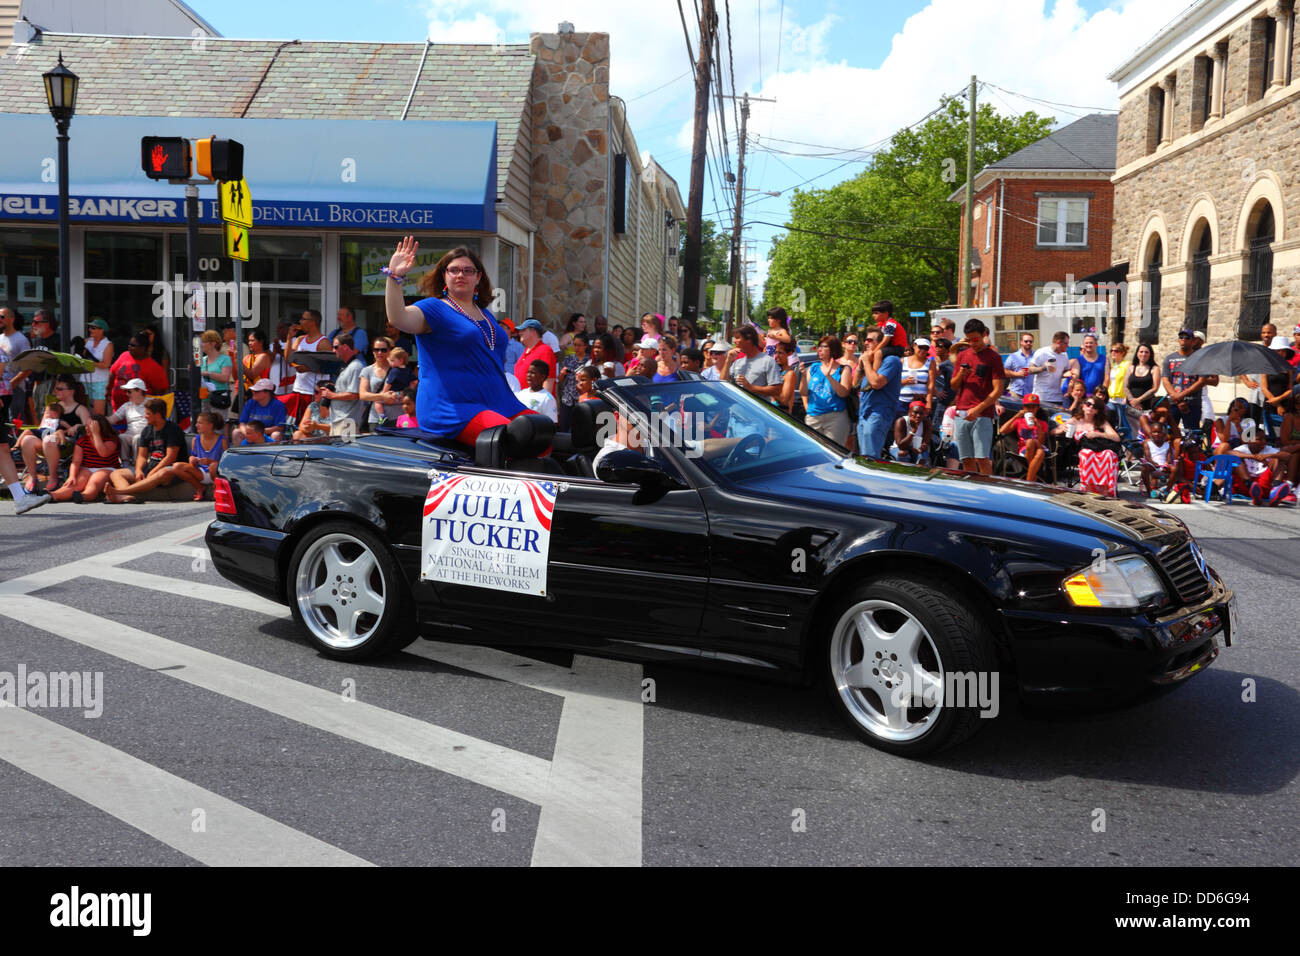 Julia Tucker, la chanteuse locale de l'hymne national, prenant part à 4th des parades du jour de l'indépendance de juillet, Catonsville, Maryland, États-Unis Banque D'Images